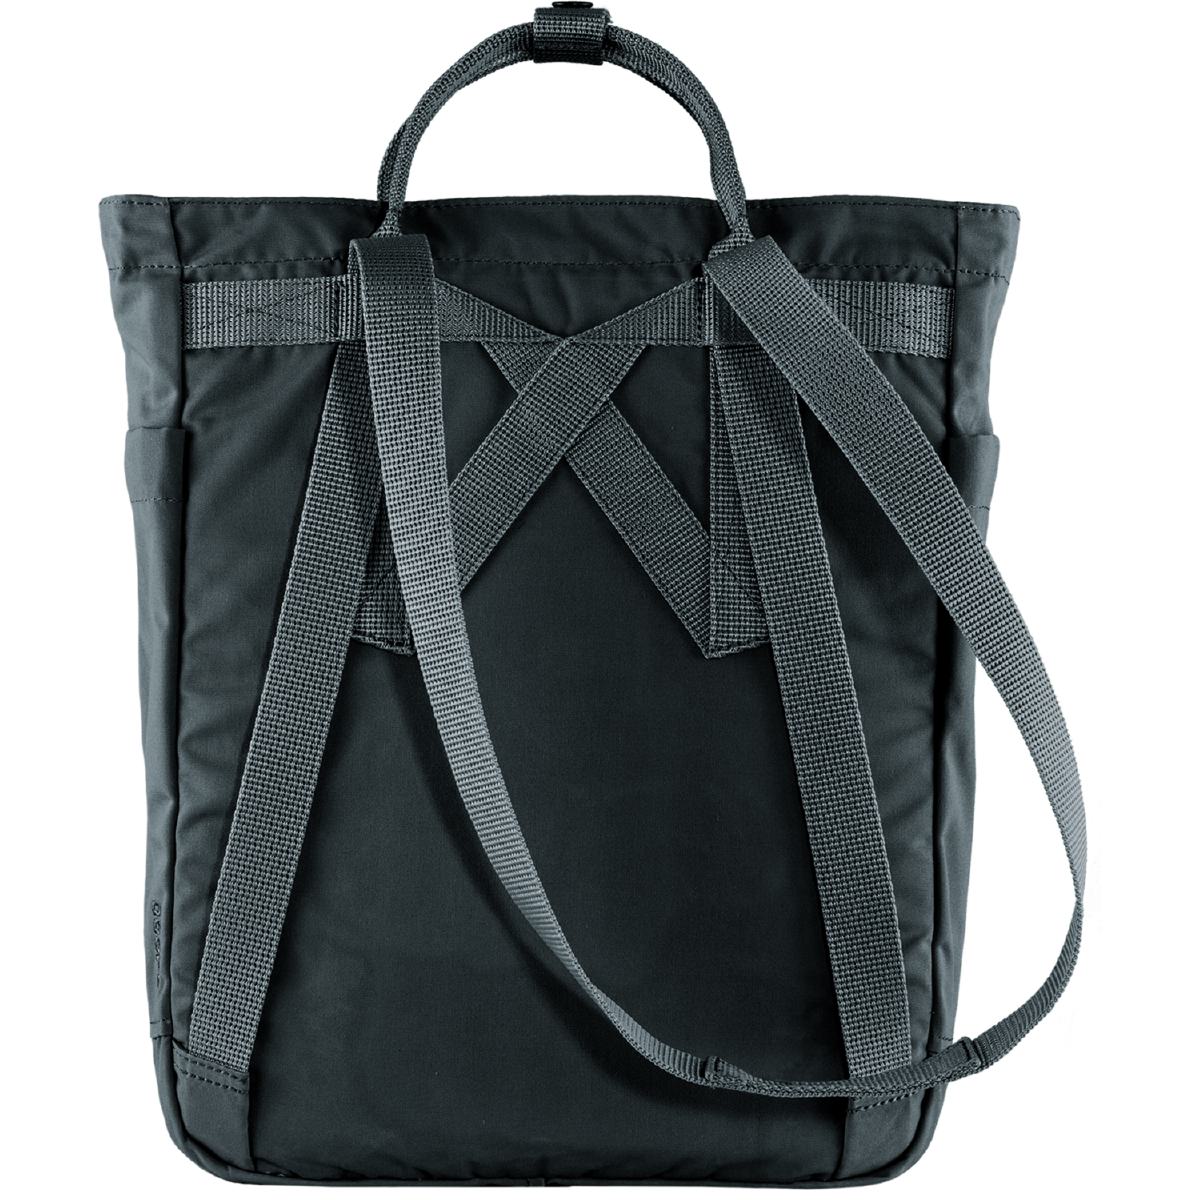 Fjäll Räven Tasche Kanken Totepack praktische, zum Rucksack umwandelbare Tragetasche aus robustem Material.